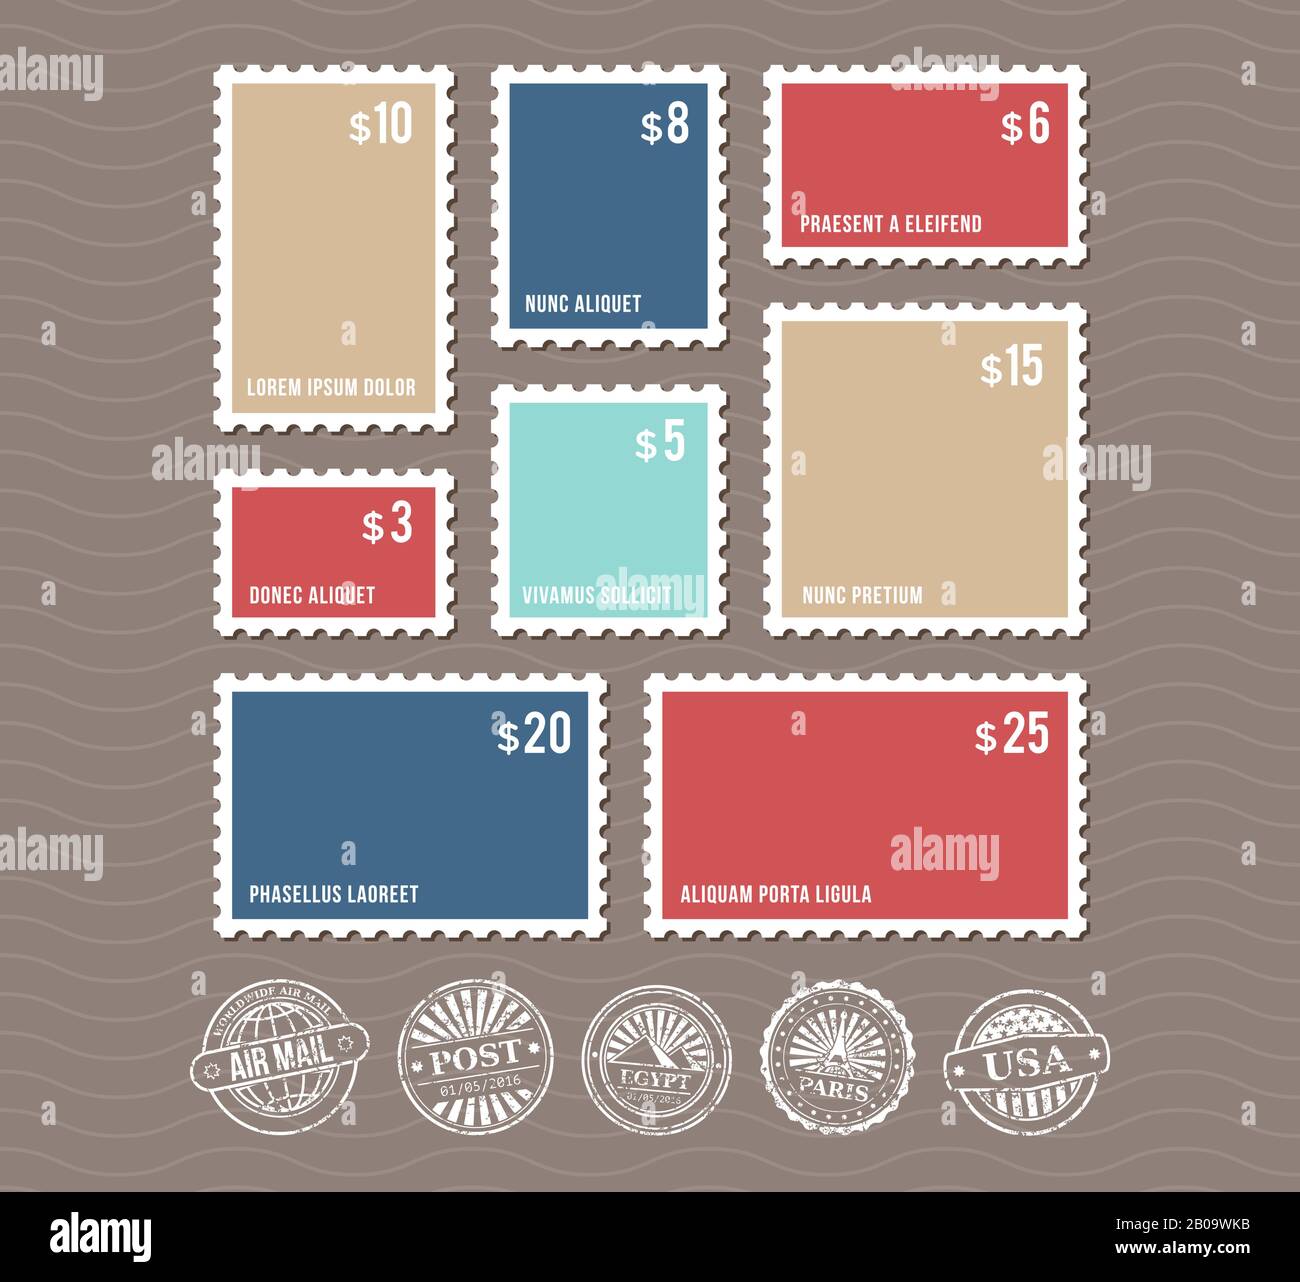 Leere Briefmarken in verschiedenen Größen und Vintage-Postmarken-Vektor. Satz Farbstempel mit Preis, Abbildung Rechteckstempel Stock Vektor